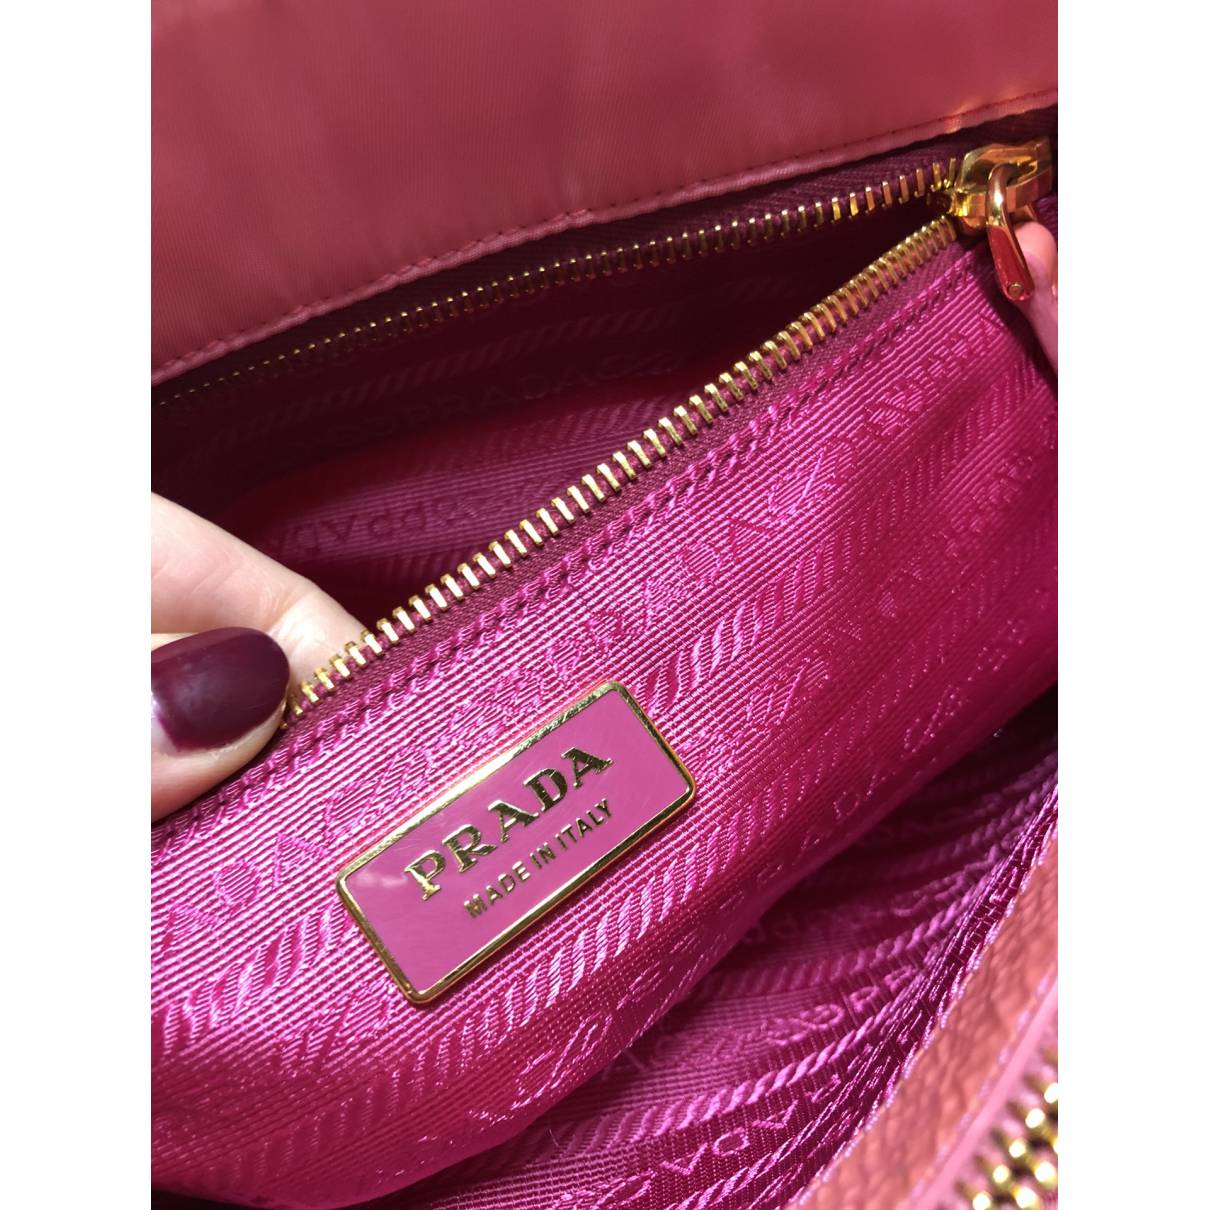 Buy Prada Tessuto city cloth handbag online